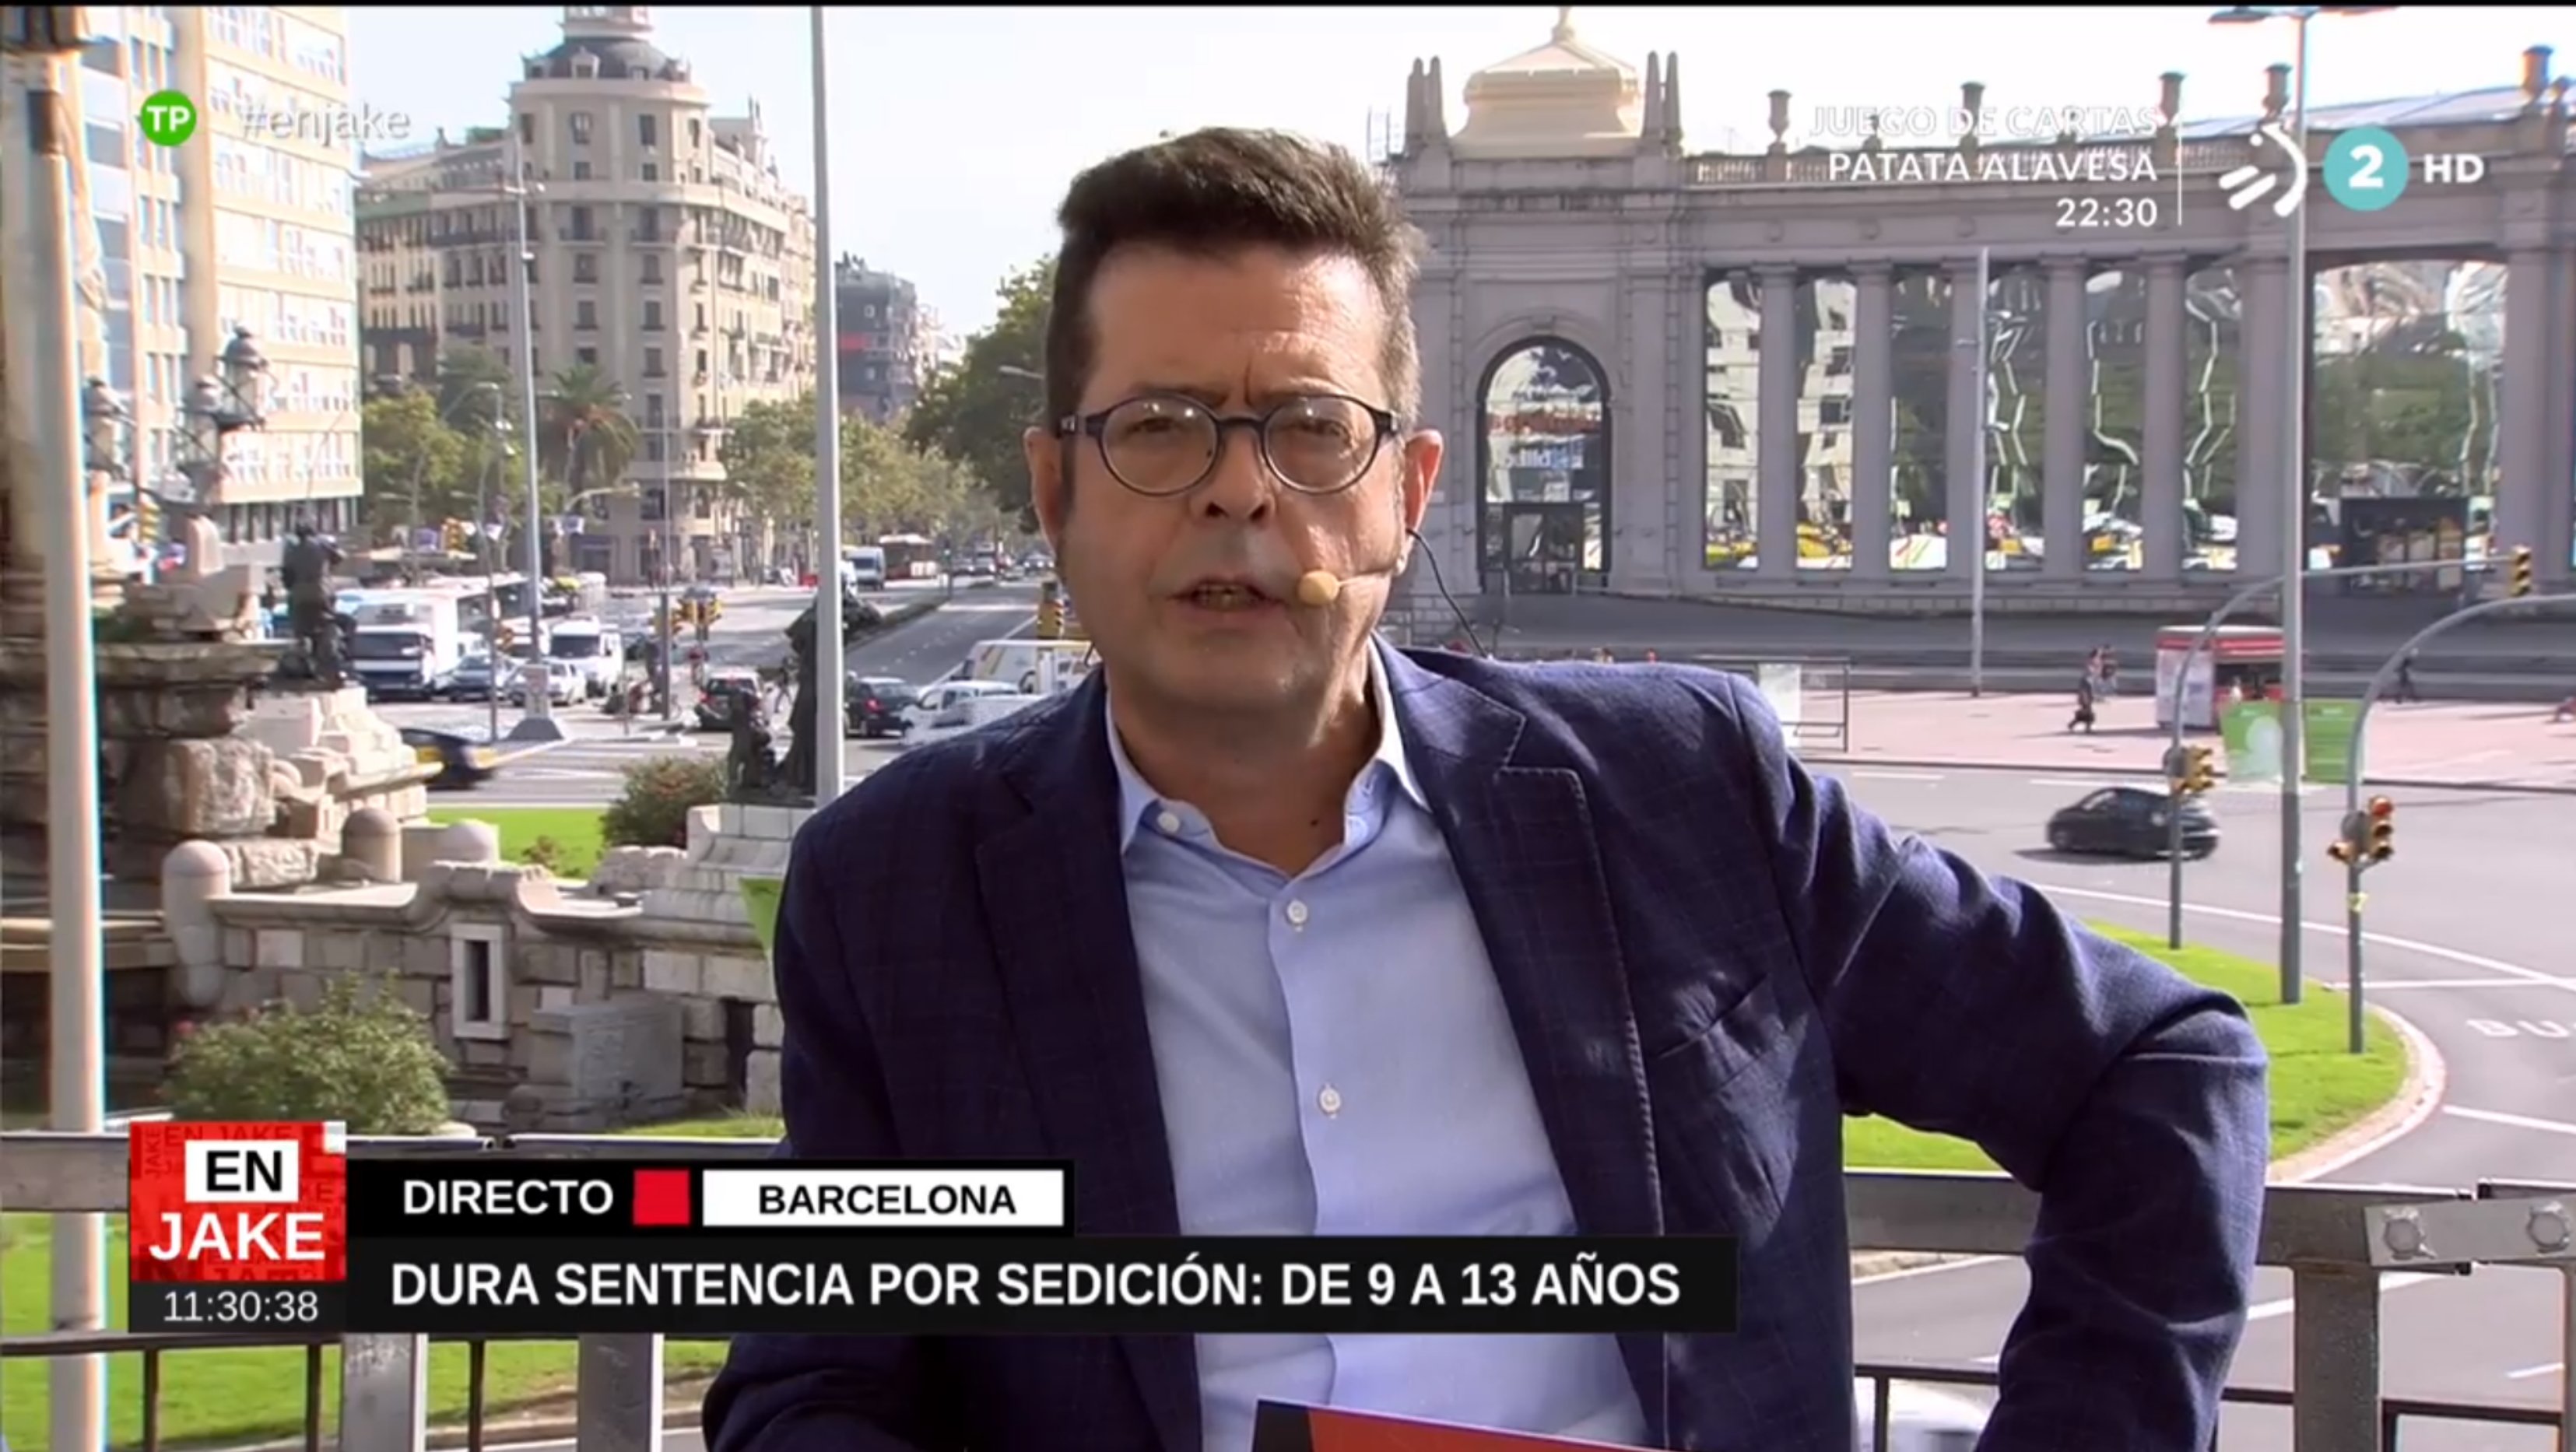 La tele vasca se instala en Barcelona y tilda la sentencia de "barbaridad"